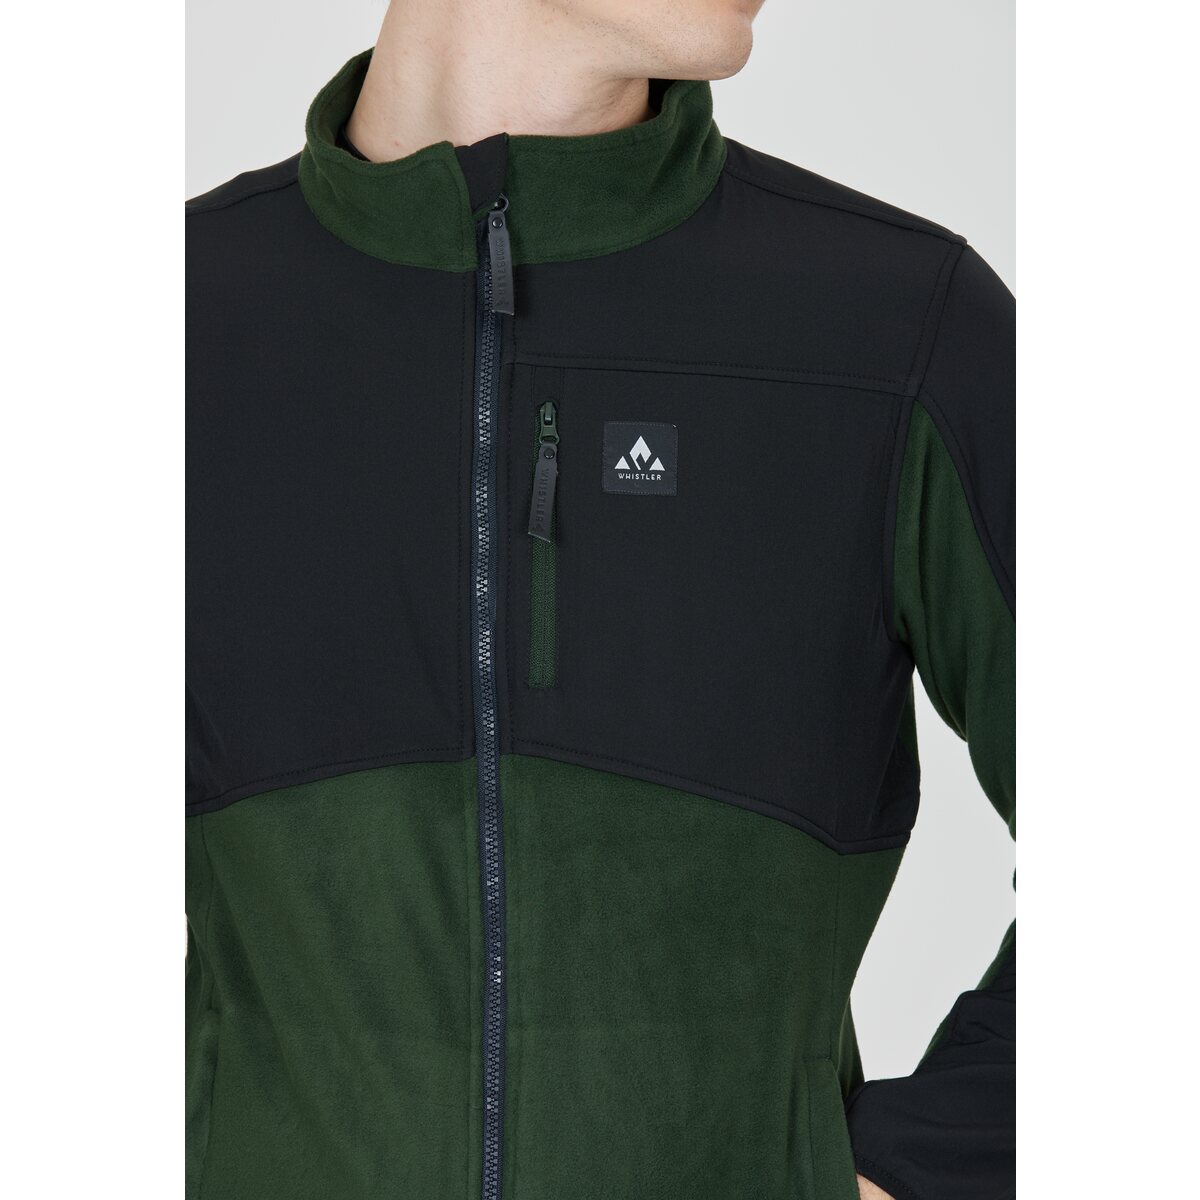 WHISTLER Evo M online Fleece kaufen Jacket